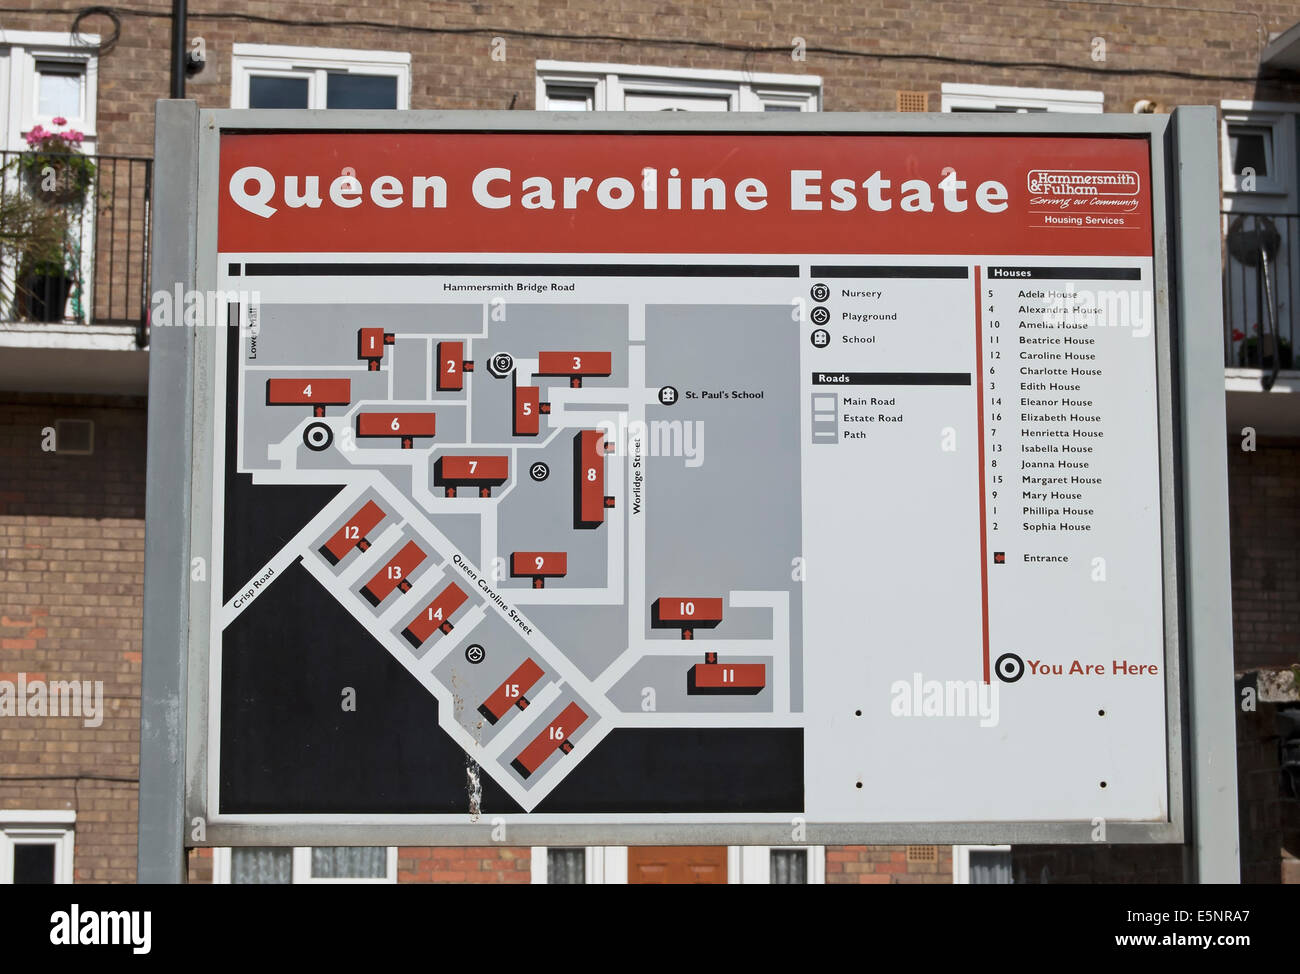 Melden Sie mit schematische Karte der Königin caroline Estate, Hammersmith, London, england Stockfoto